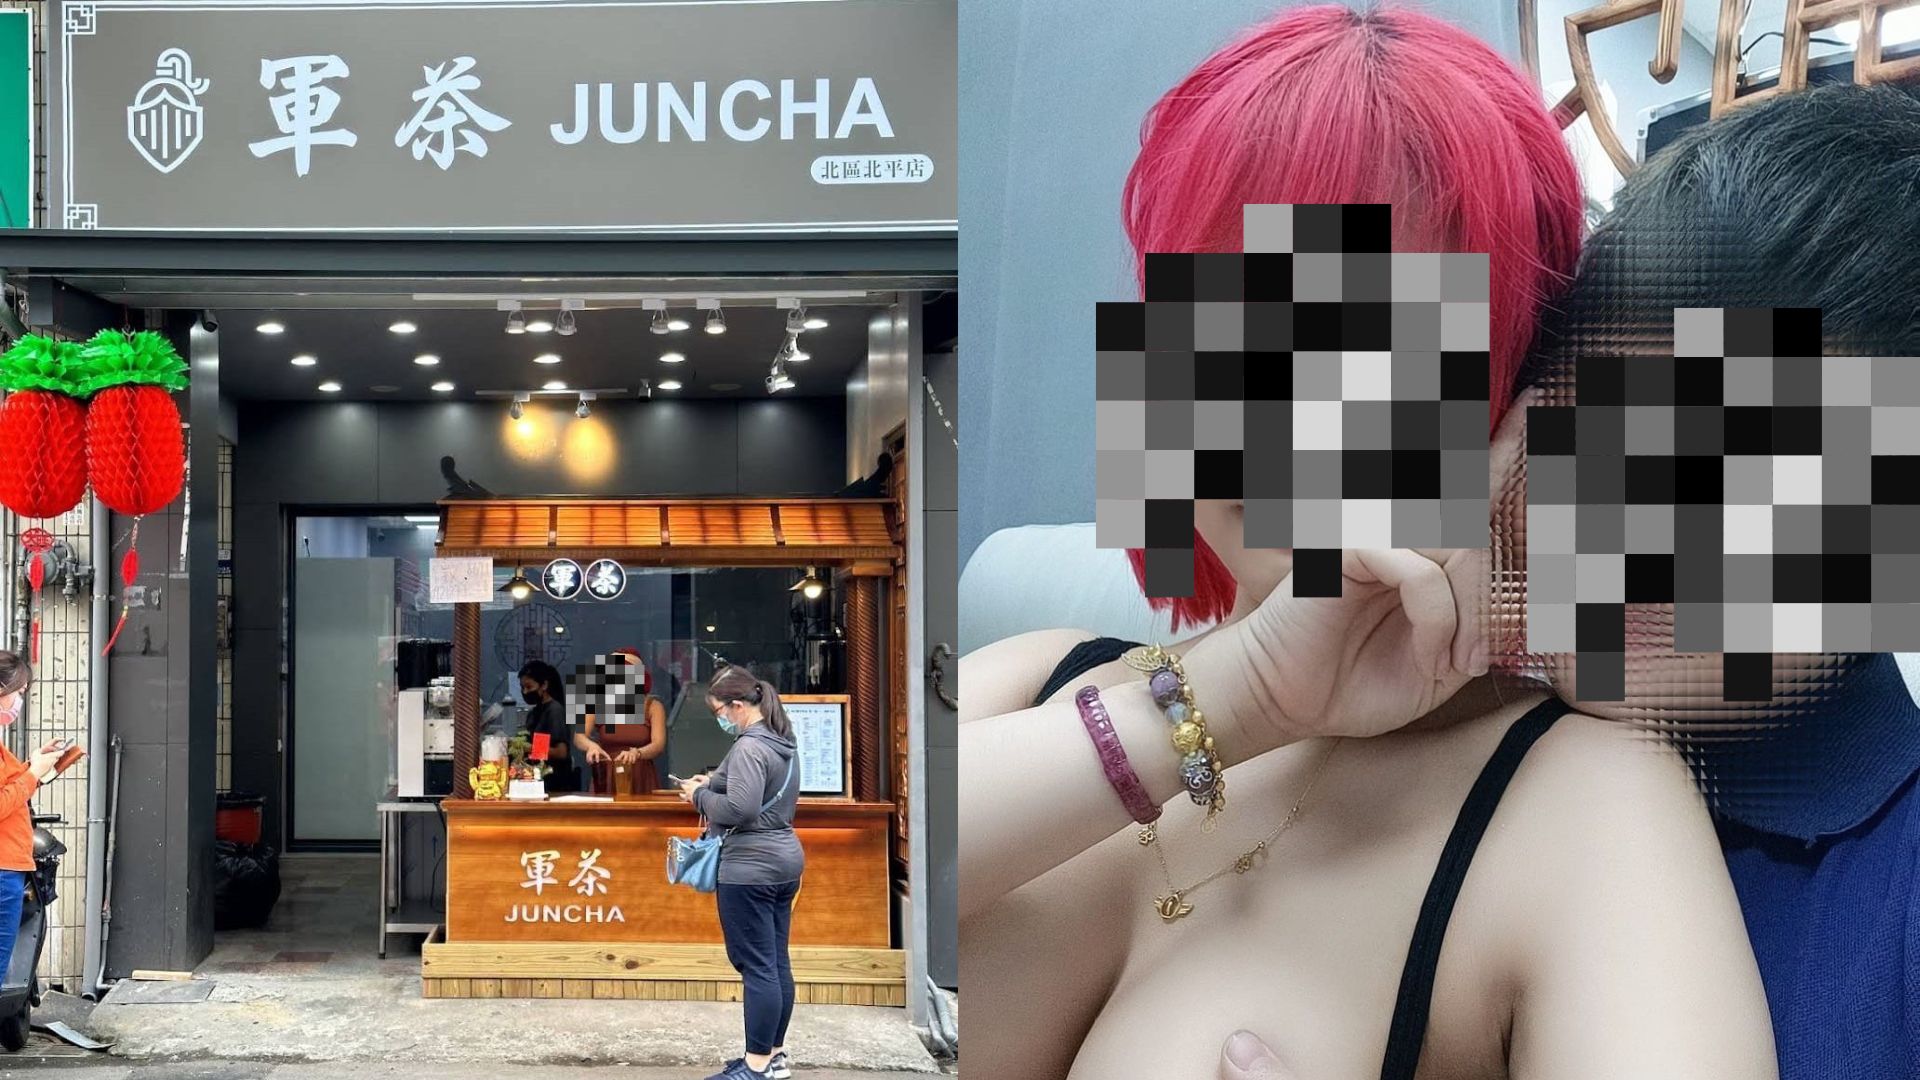 妨害風化｜台灣飲品店「打卡摸奶」谷生意 26歲網紅被捕 辯稱僅觀念開放